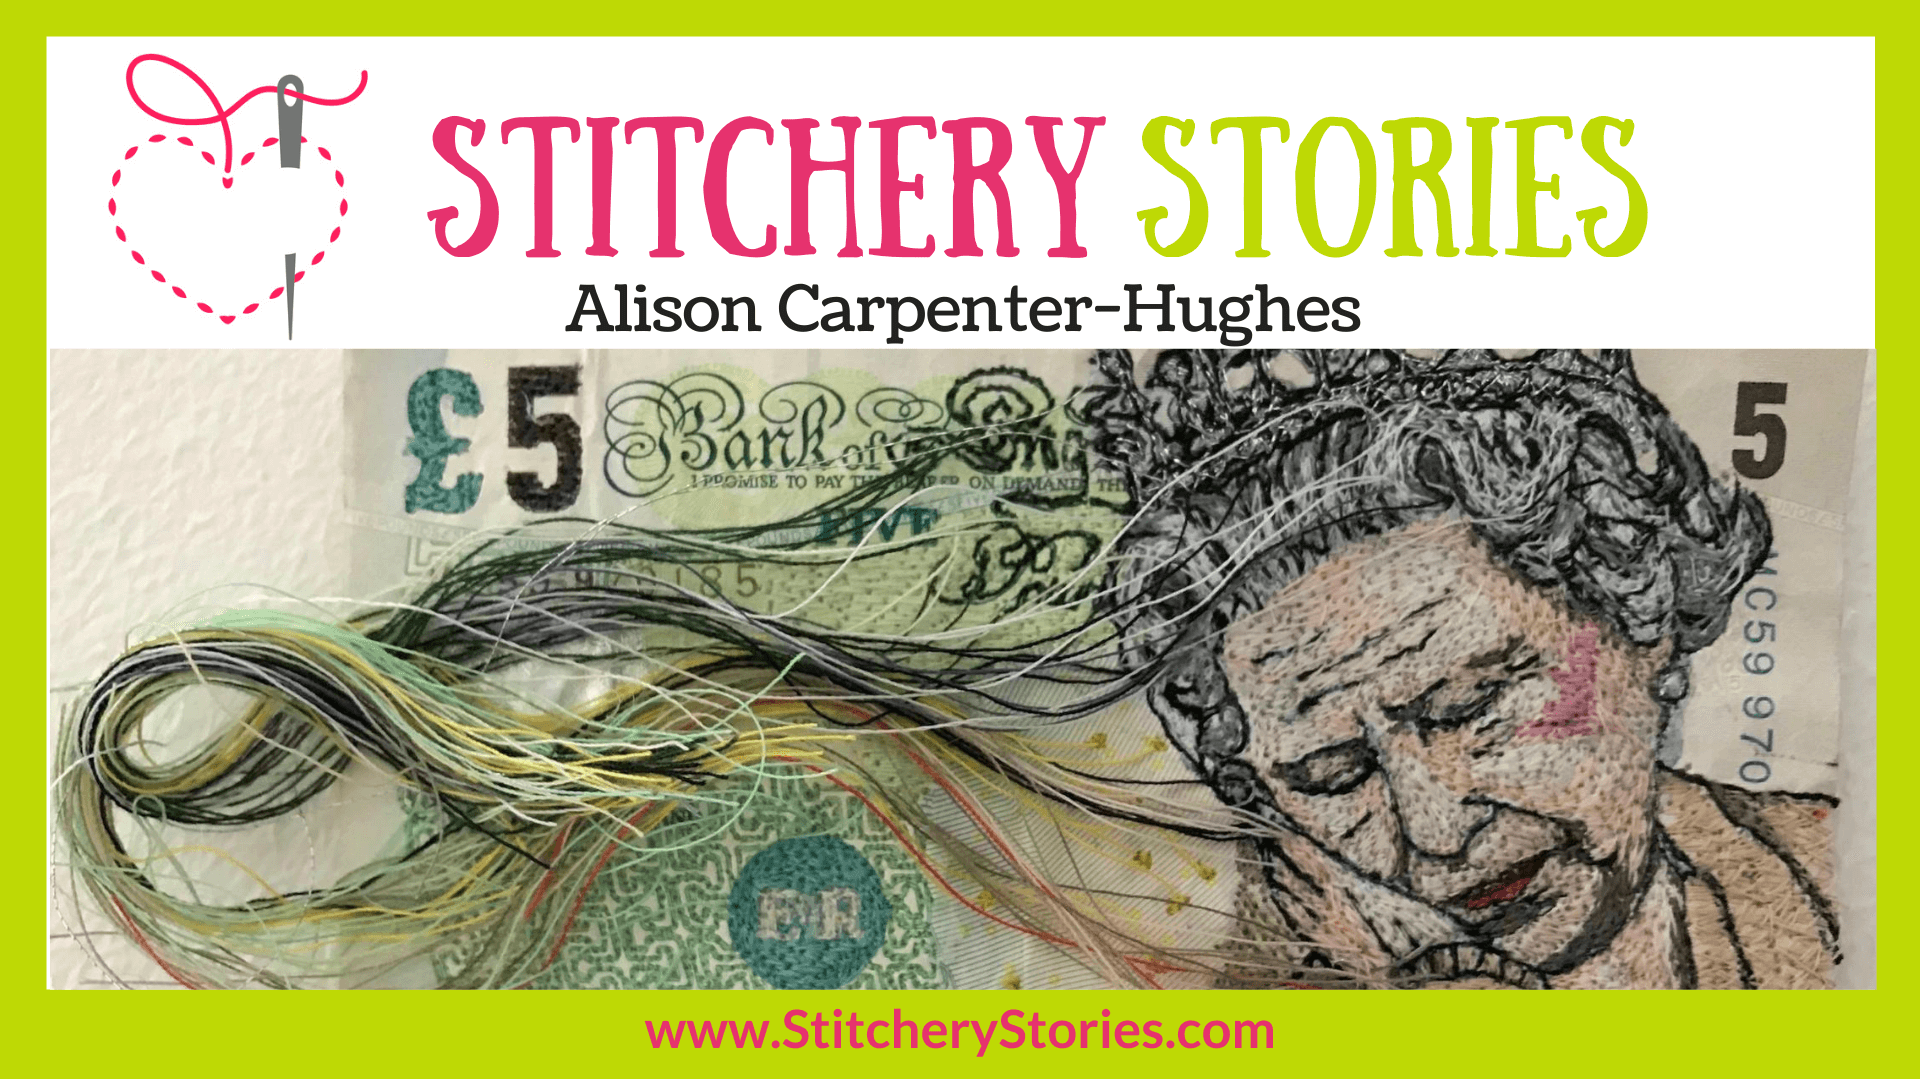 Alison Carpenter-Hughes guest Stitchery Stories textile art podcast Wide Art